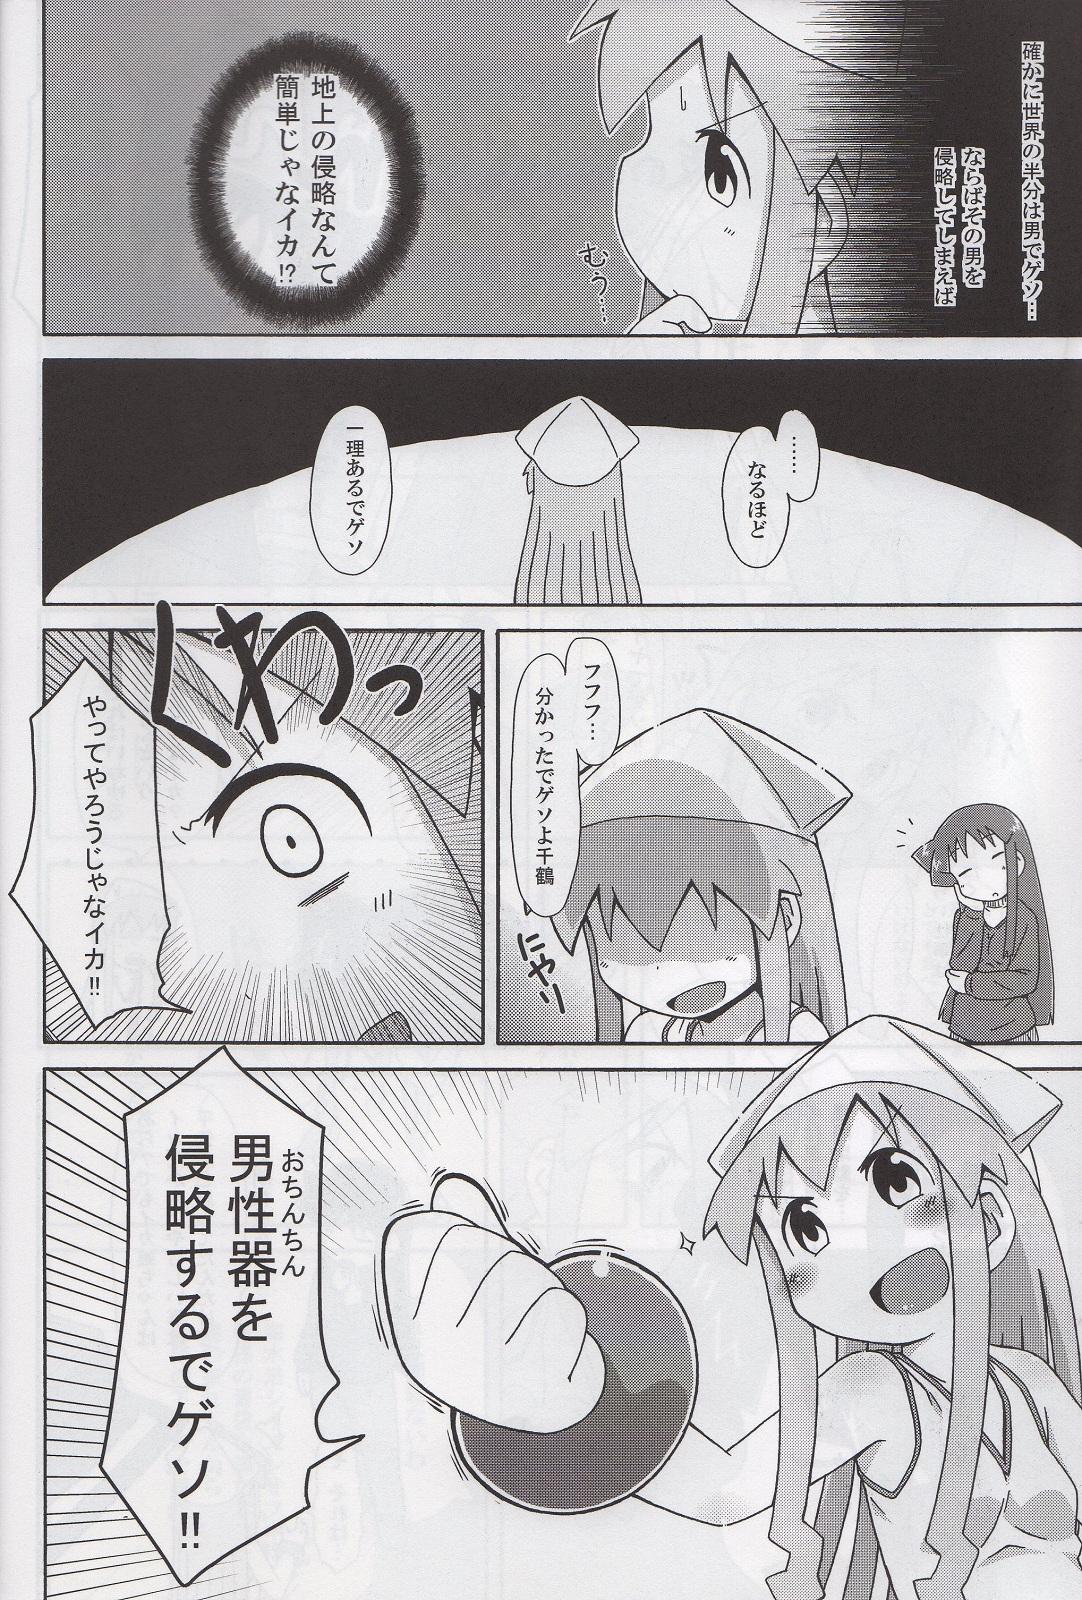 Tease Yoru no Ie Lemon he Youkoso!! - Shinryaku ika musume Throat - Page 5